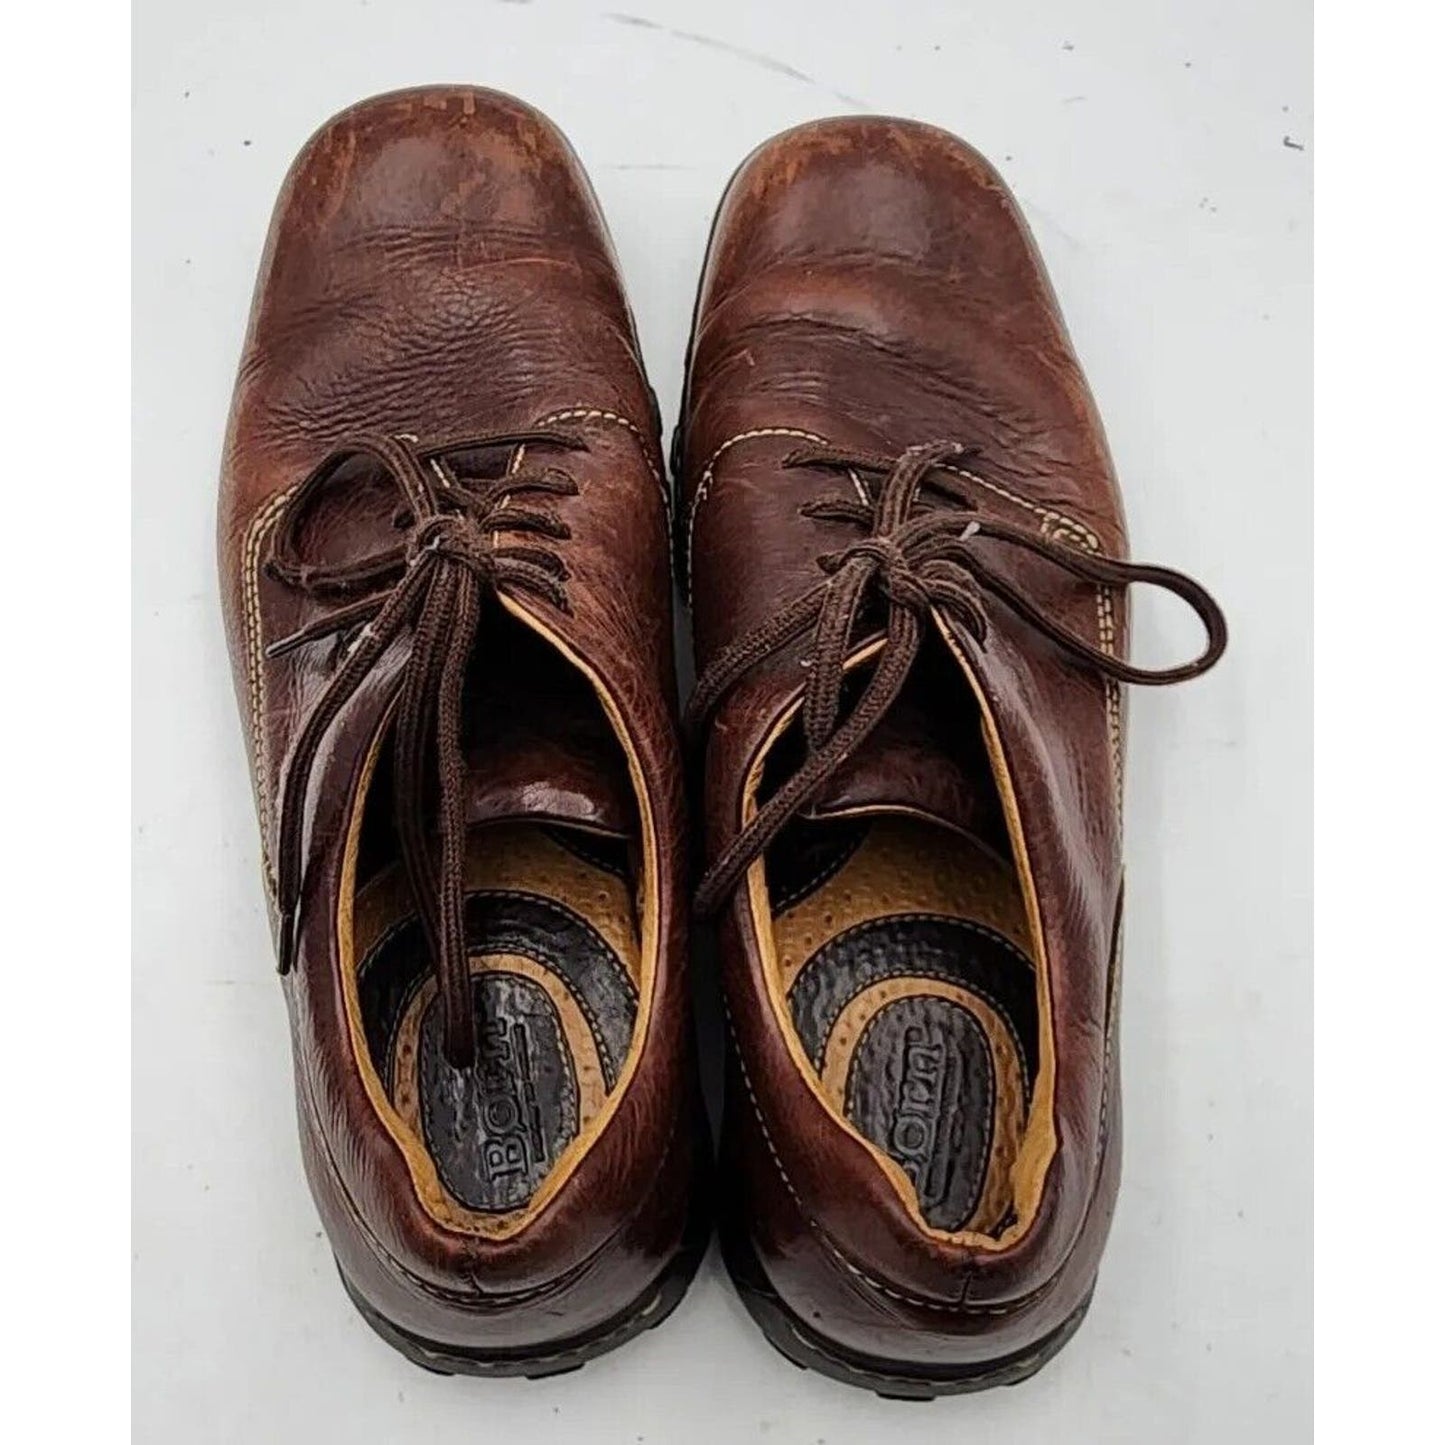 Born M6186 Vintage Brown Leather Casual Oxfords Shoes Men's Size 11.5 M US